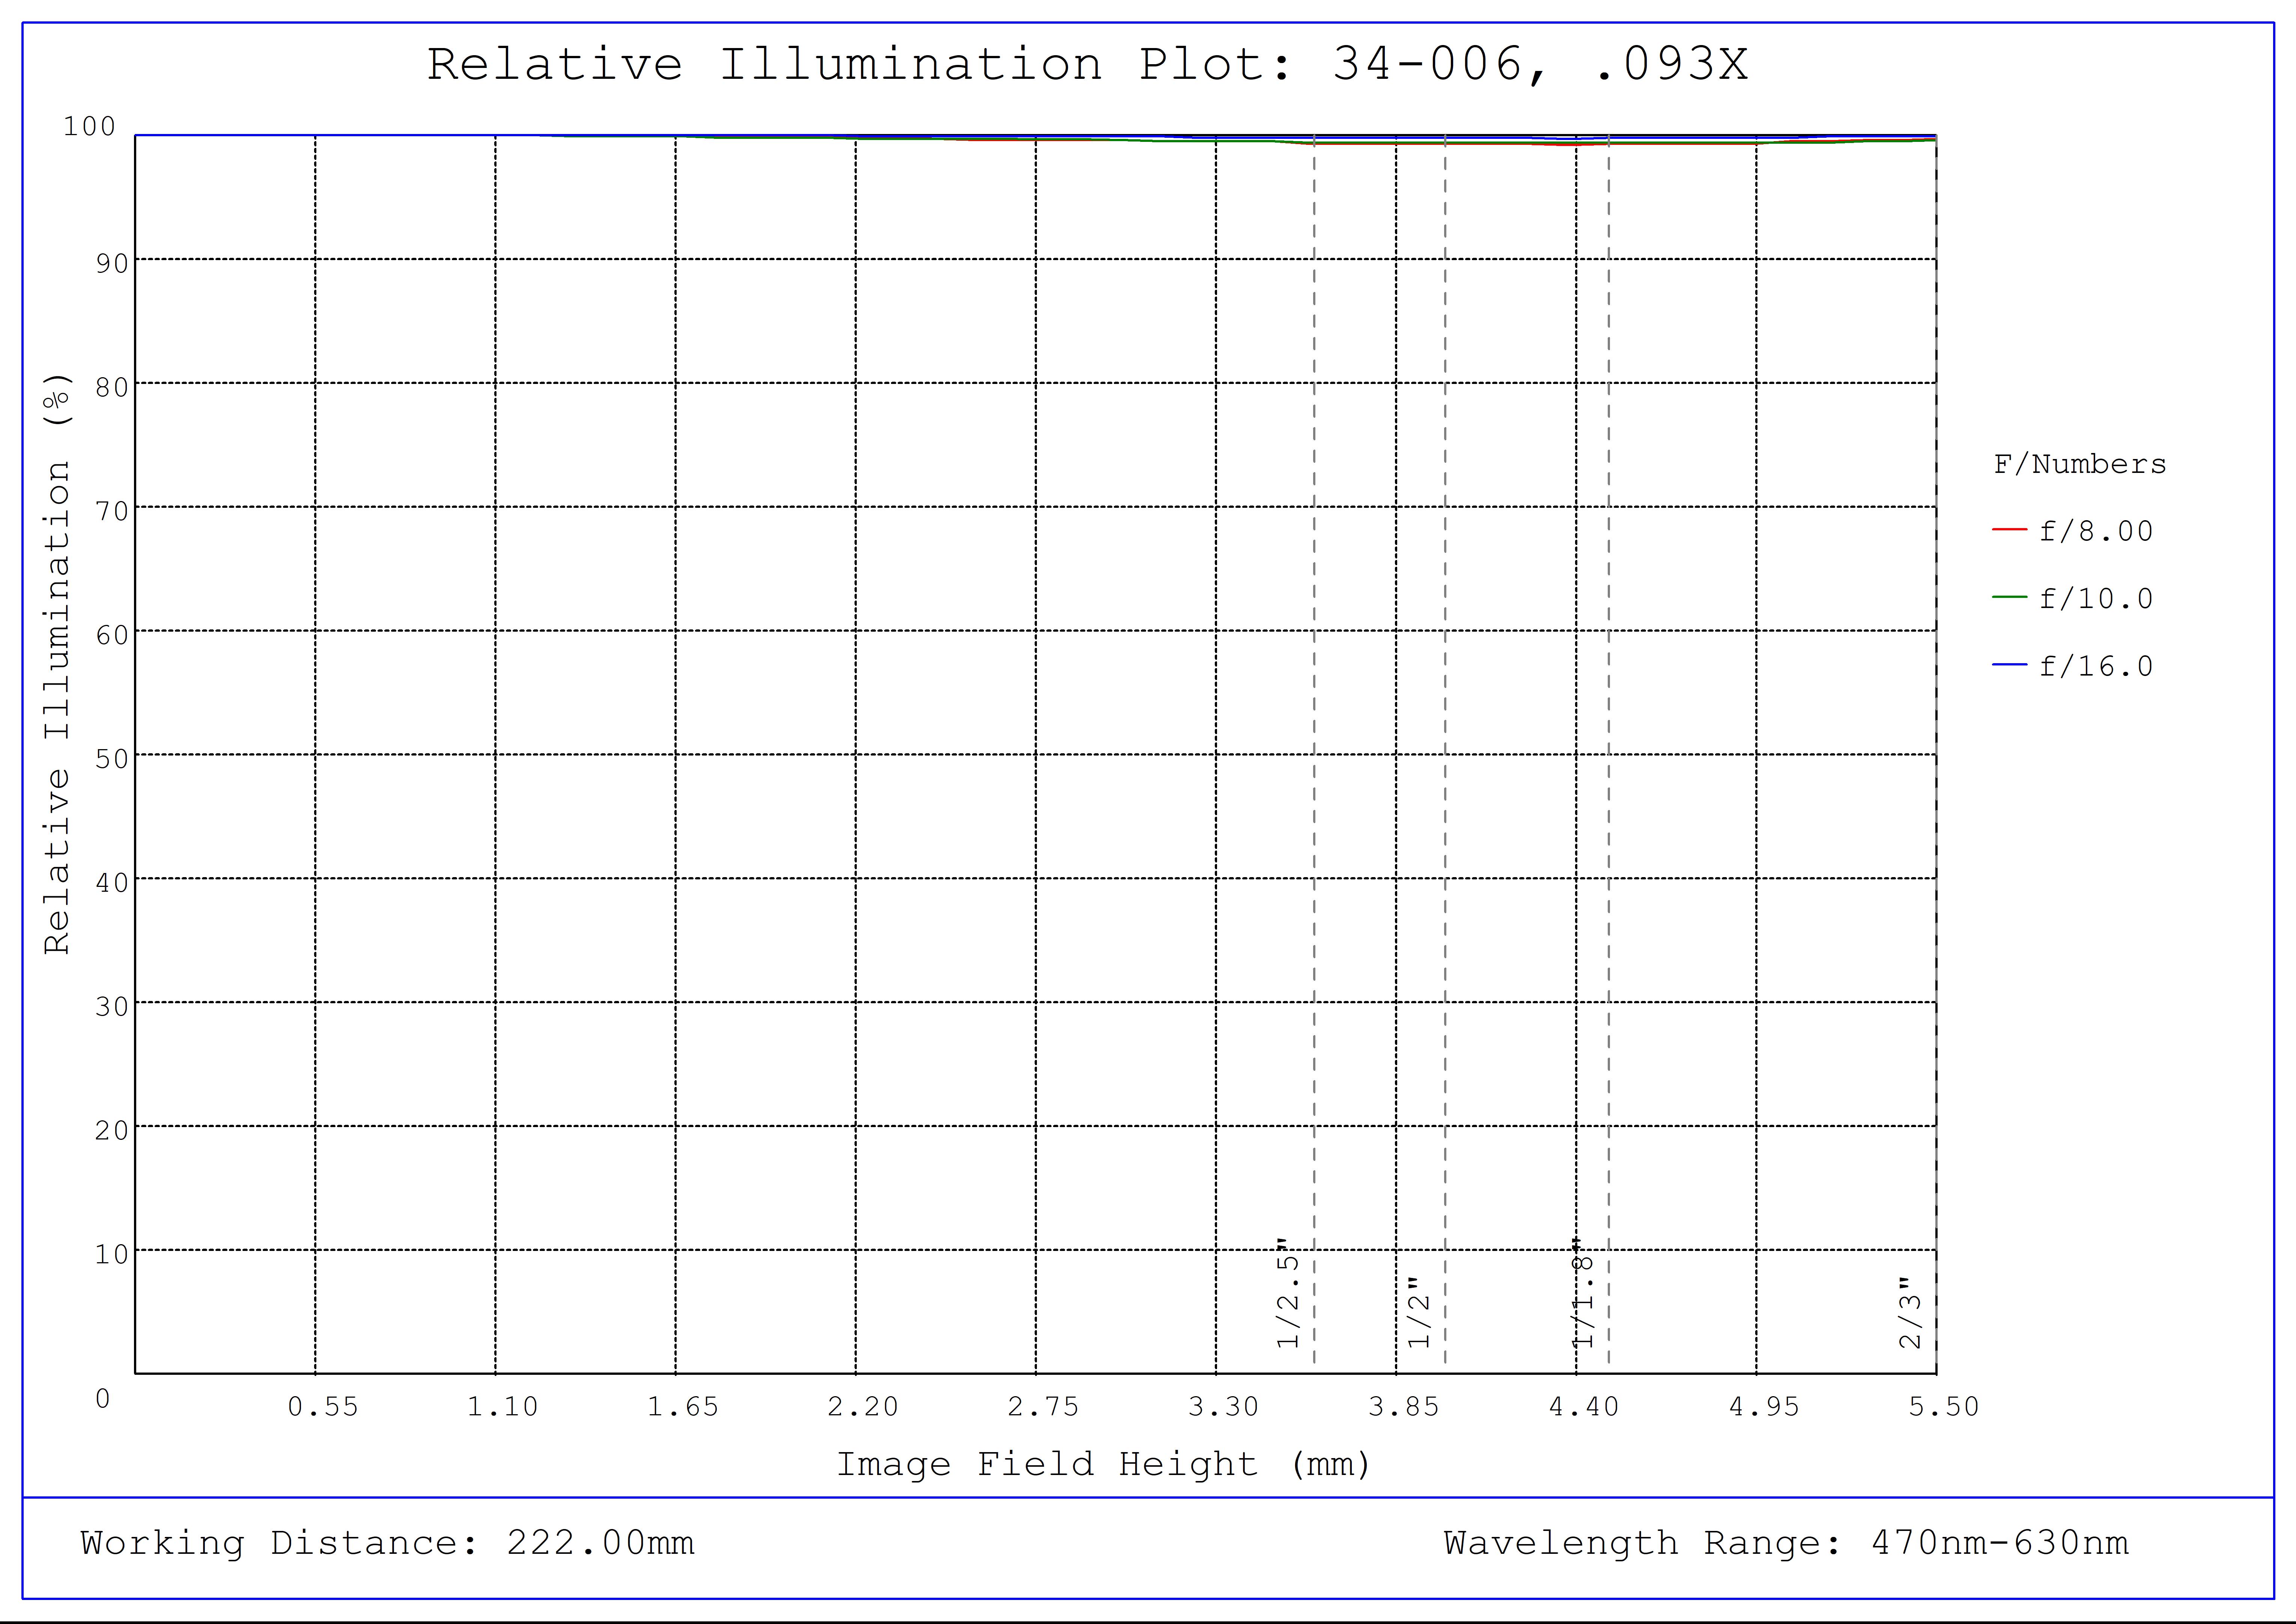 #34-006, 0.093X, 2/3" C-Mount TitanTL® Telecentric Lens, Relative Illumination Plot